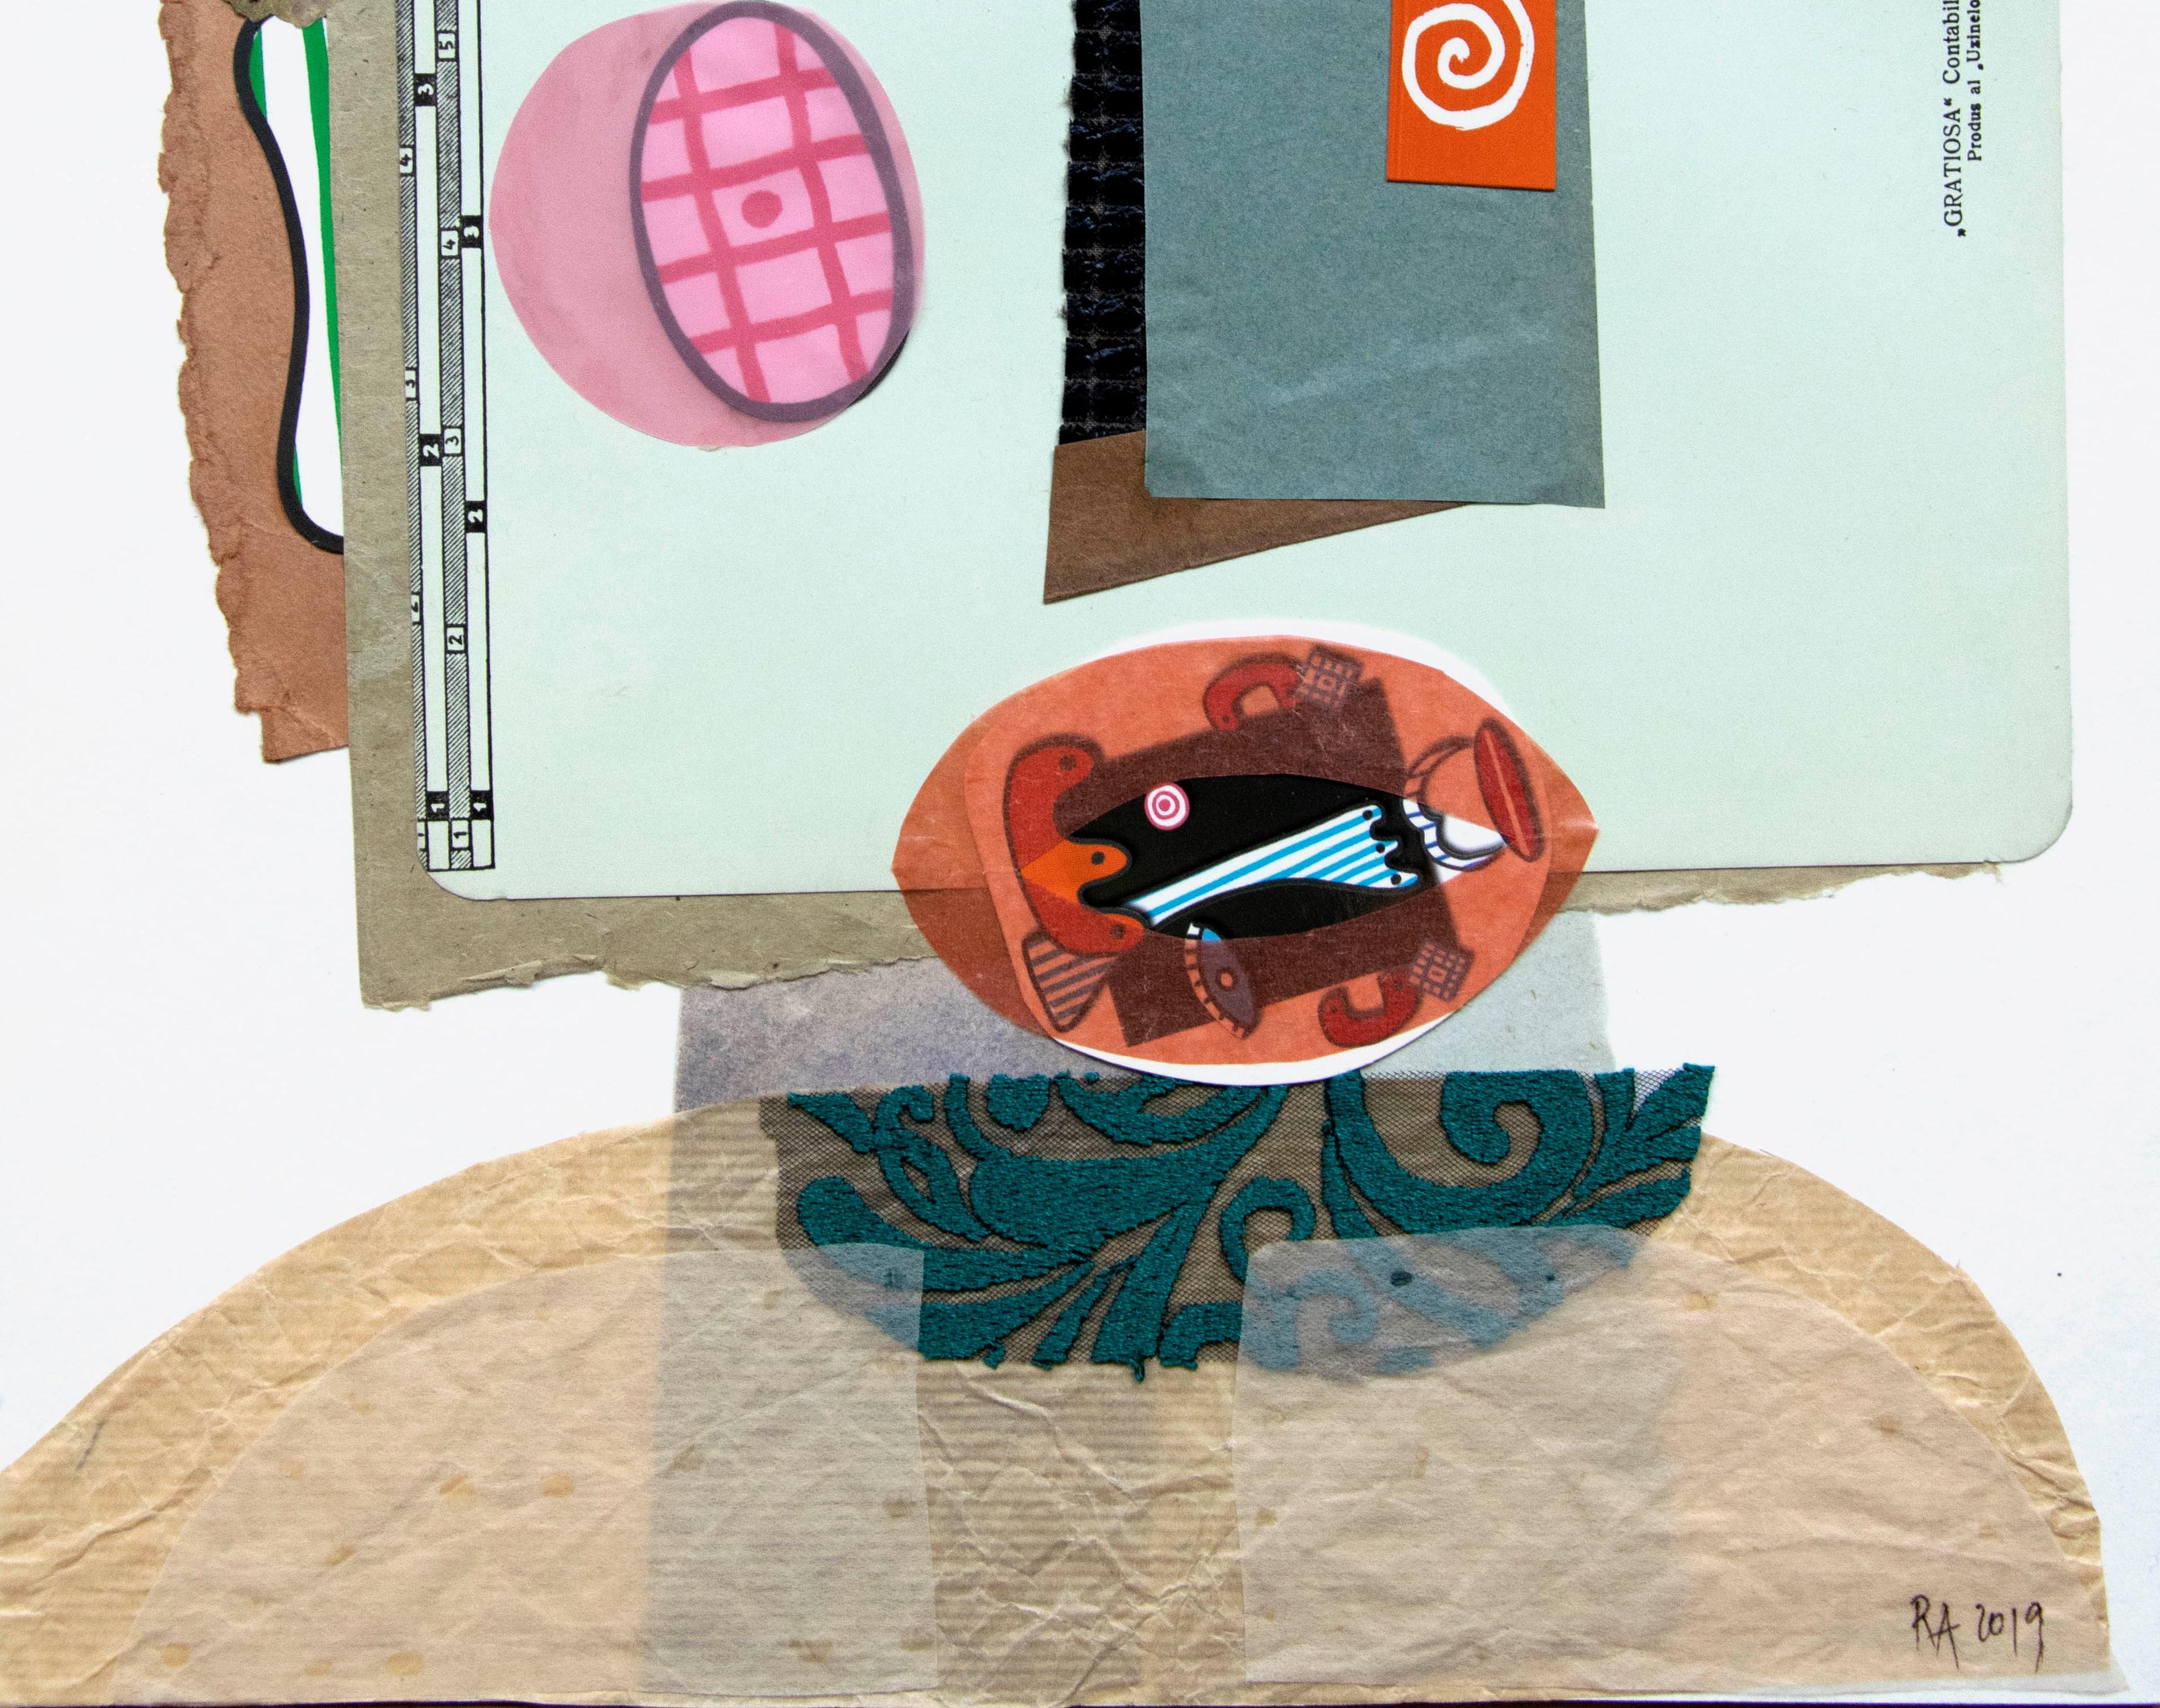 The Registrar - Art contemporain, collage sur papier, drôle, vert - Abstrait Mixed Media Art par Raluca Arnăutu